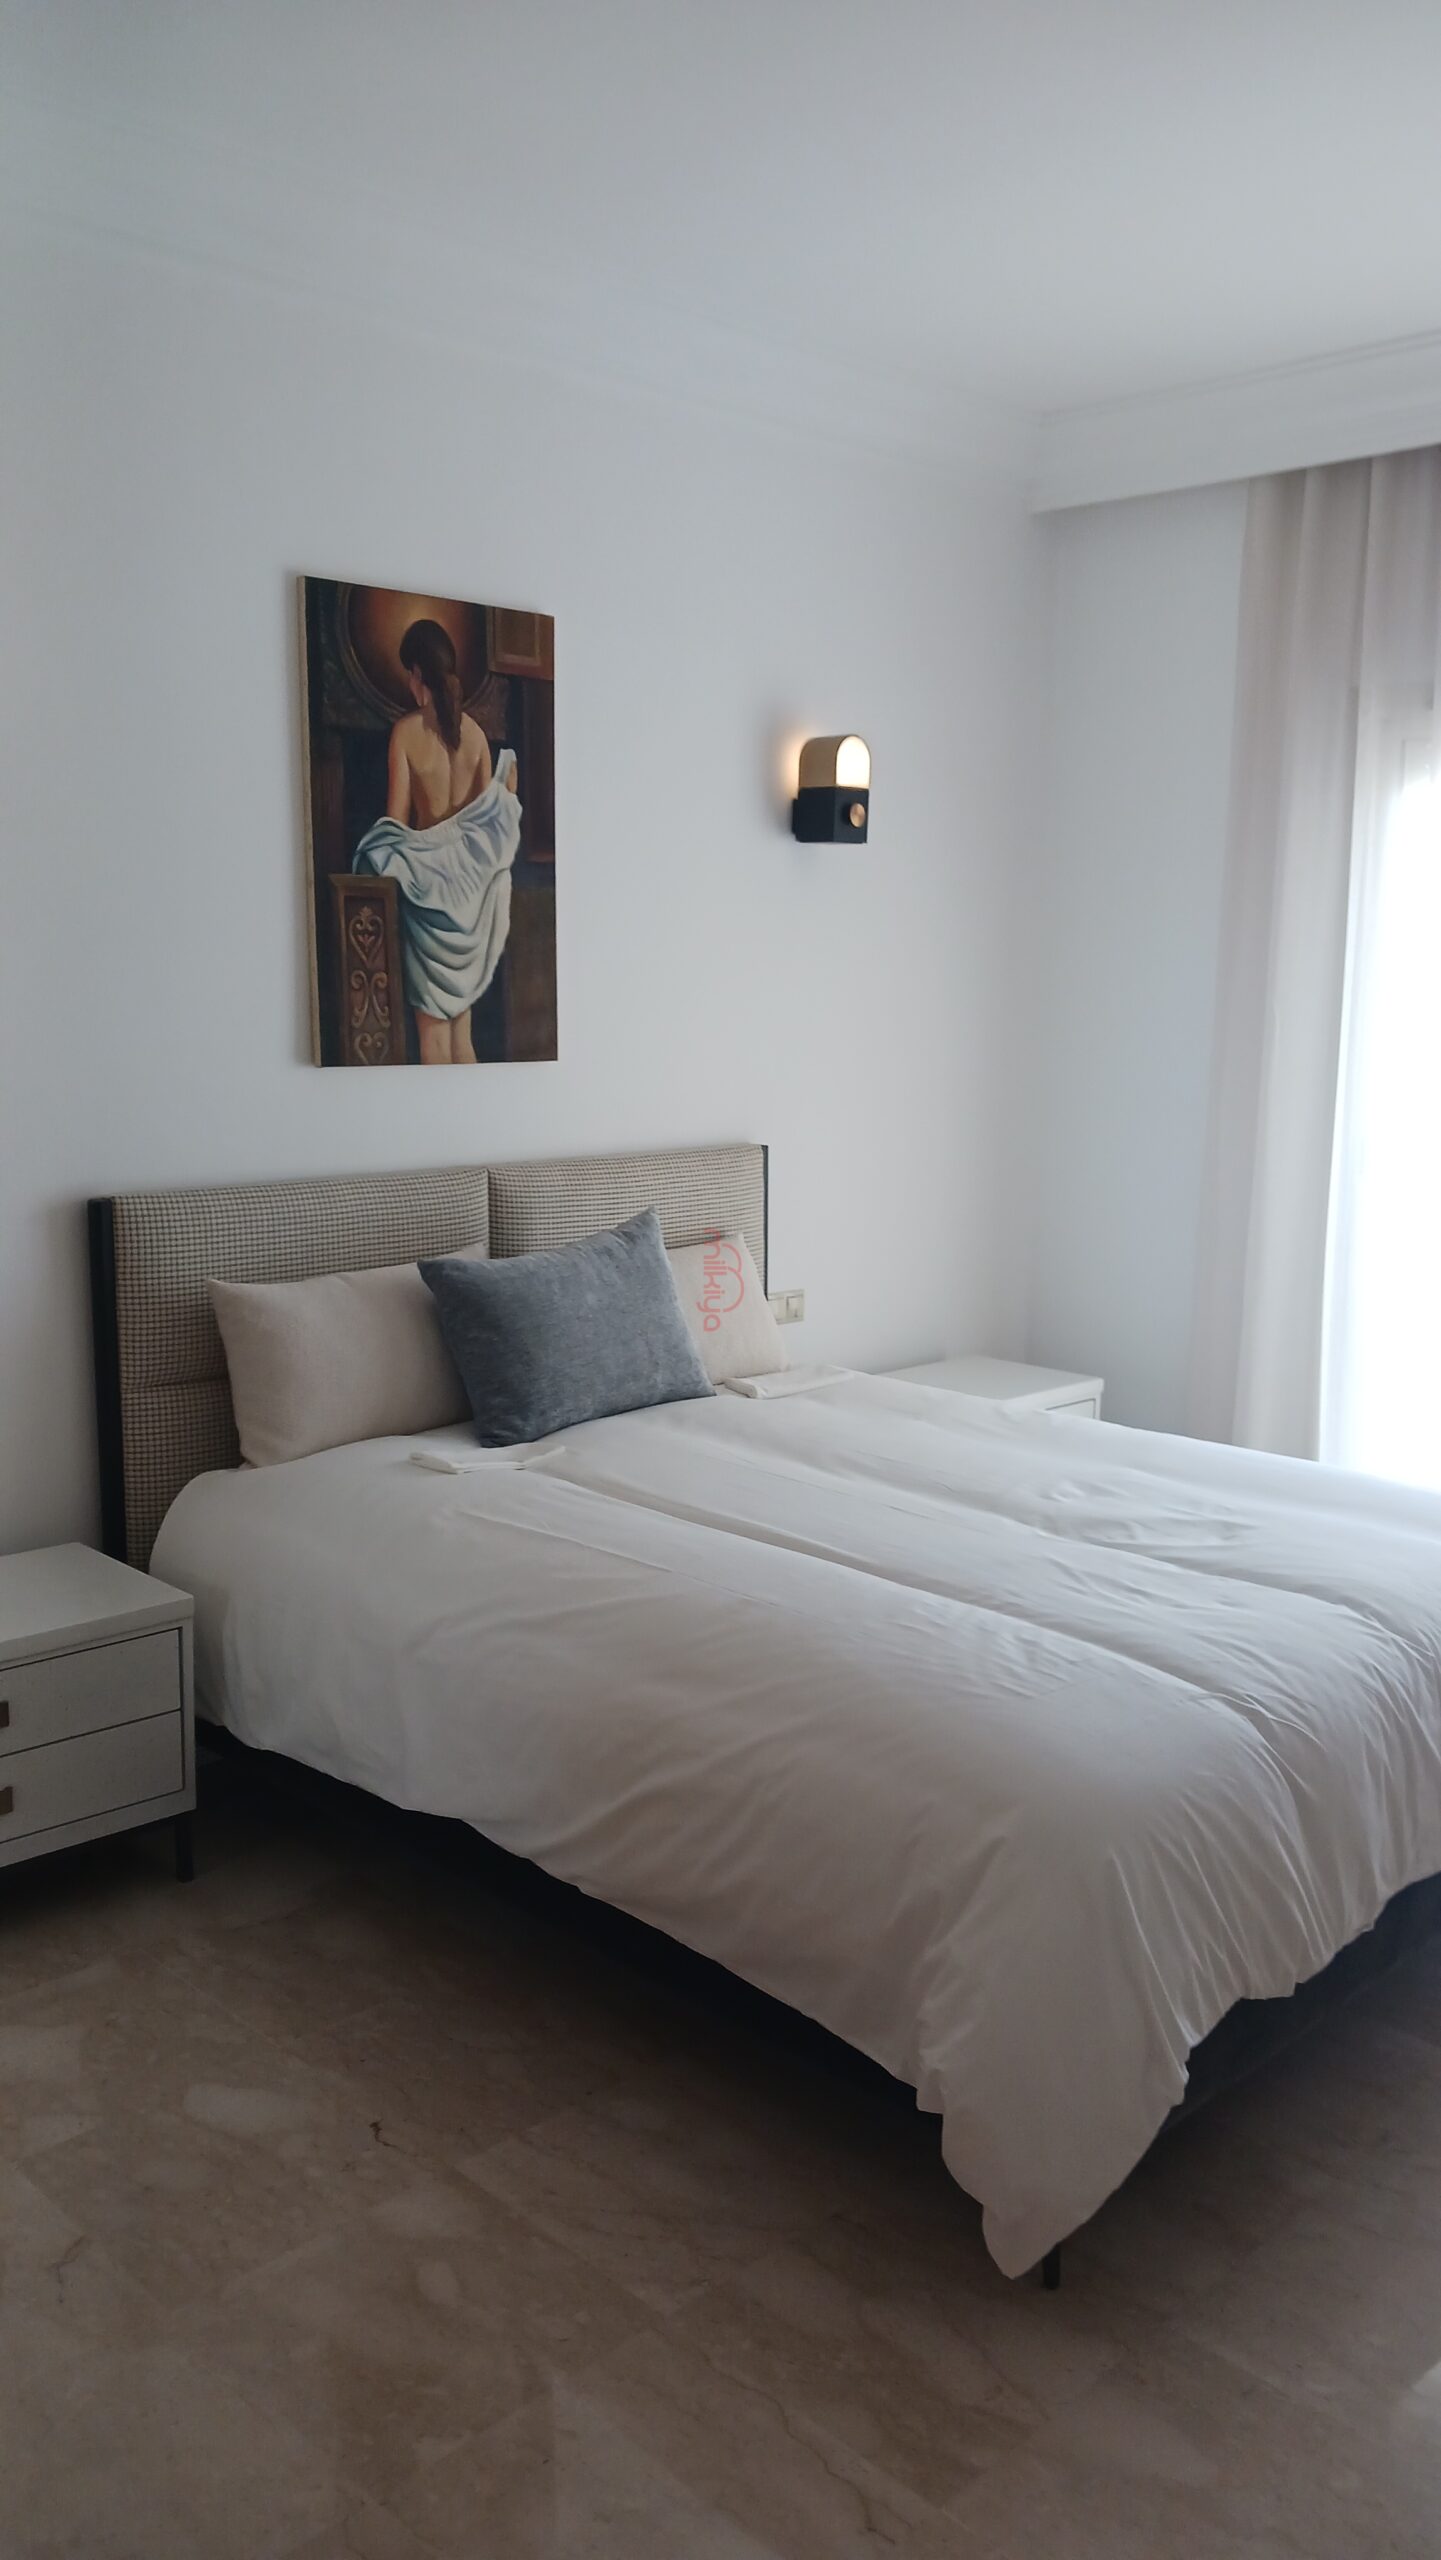 562 - Location Appartement 120 m² à Casablanca